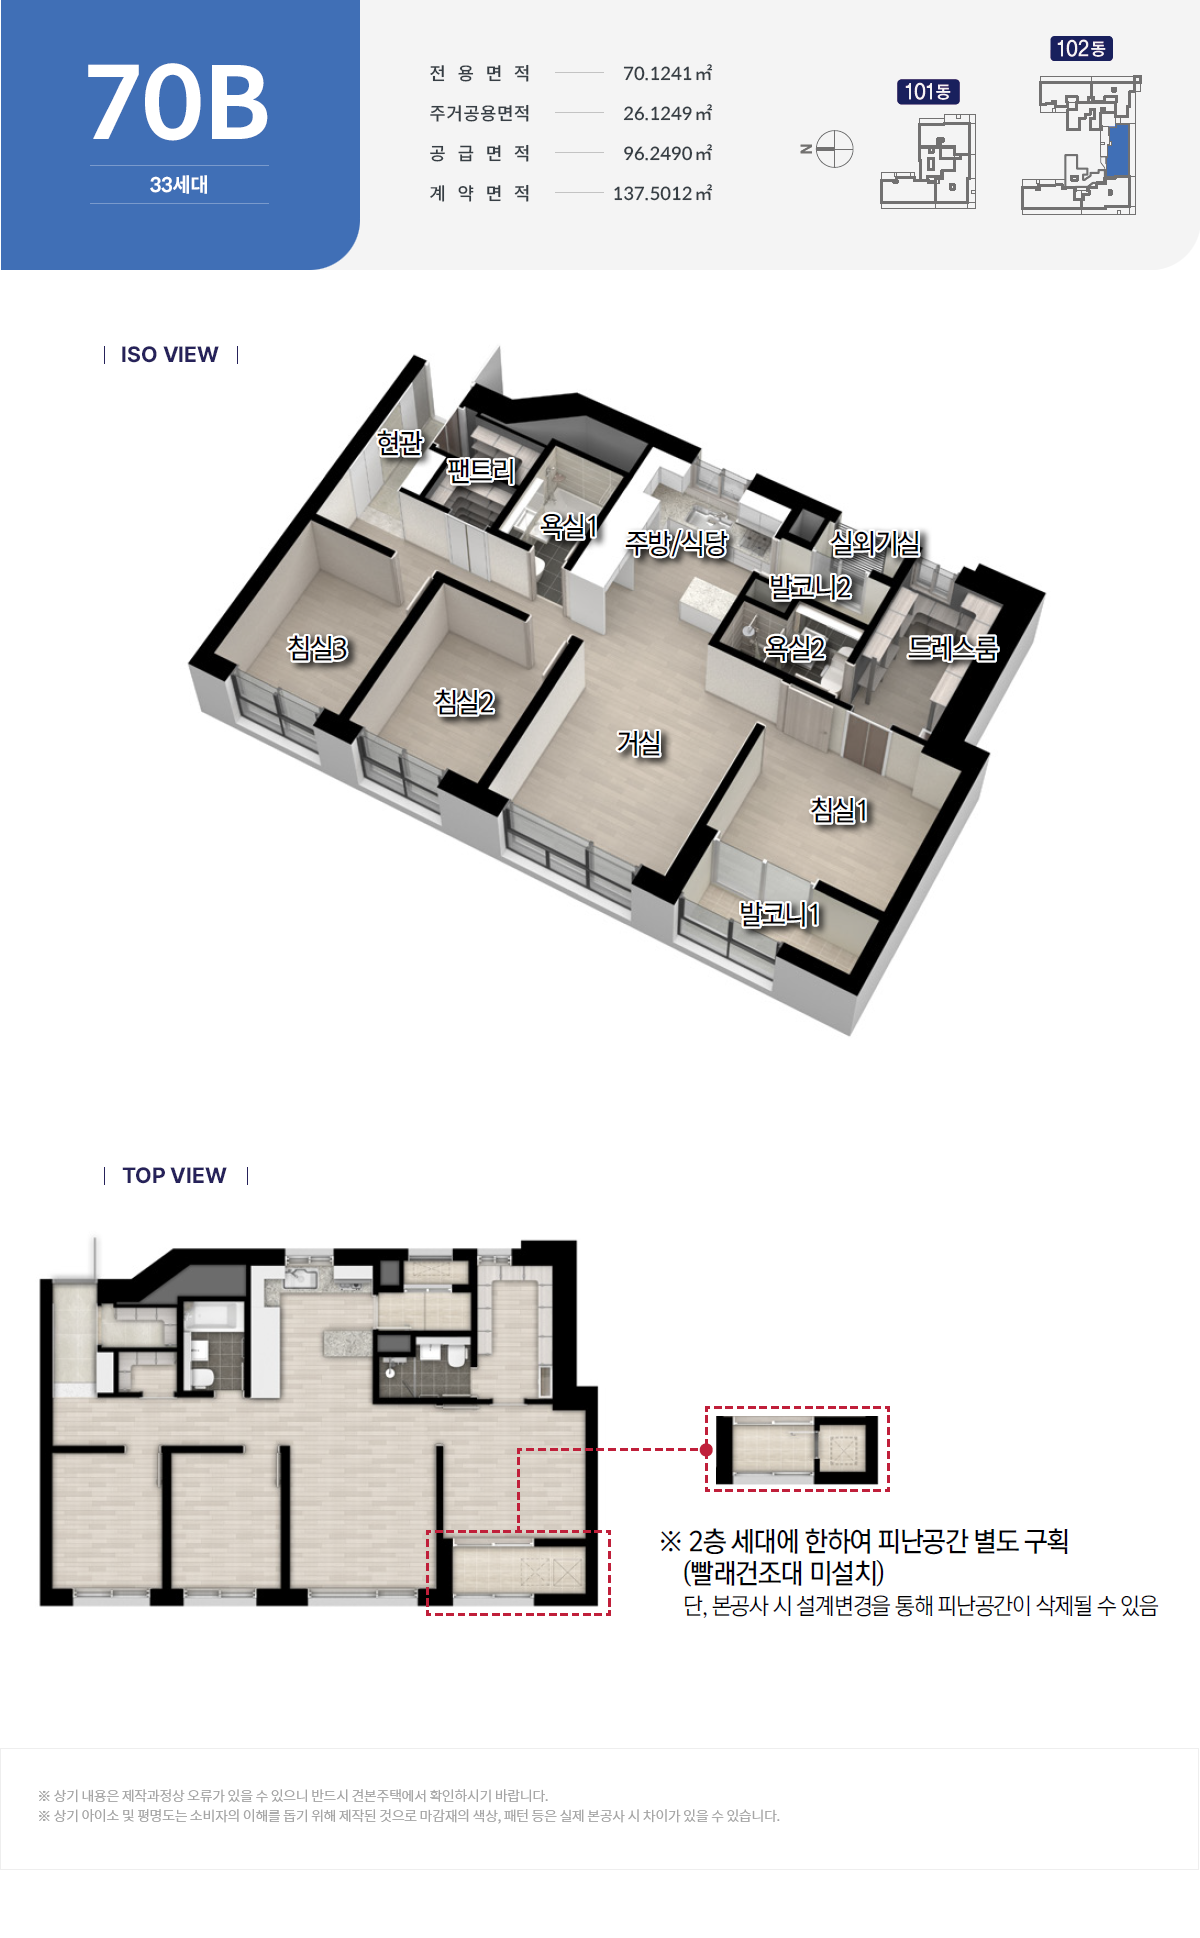 두산위브더제니스 센트럴 양정 아파트-주택형안내-70B